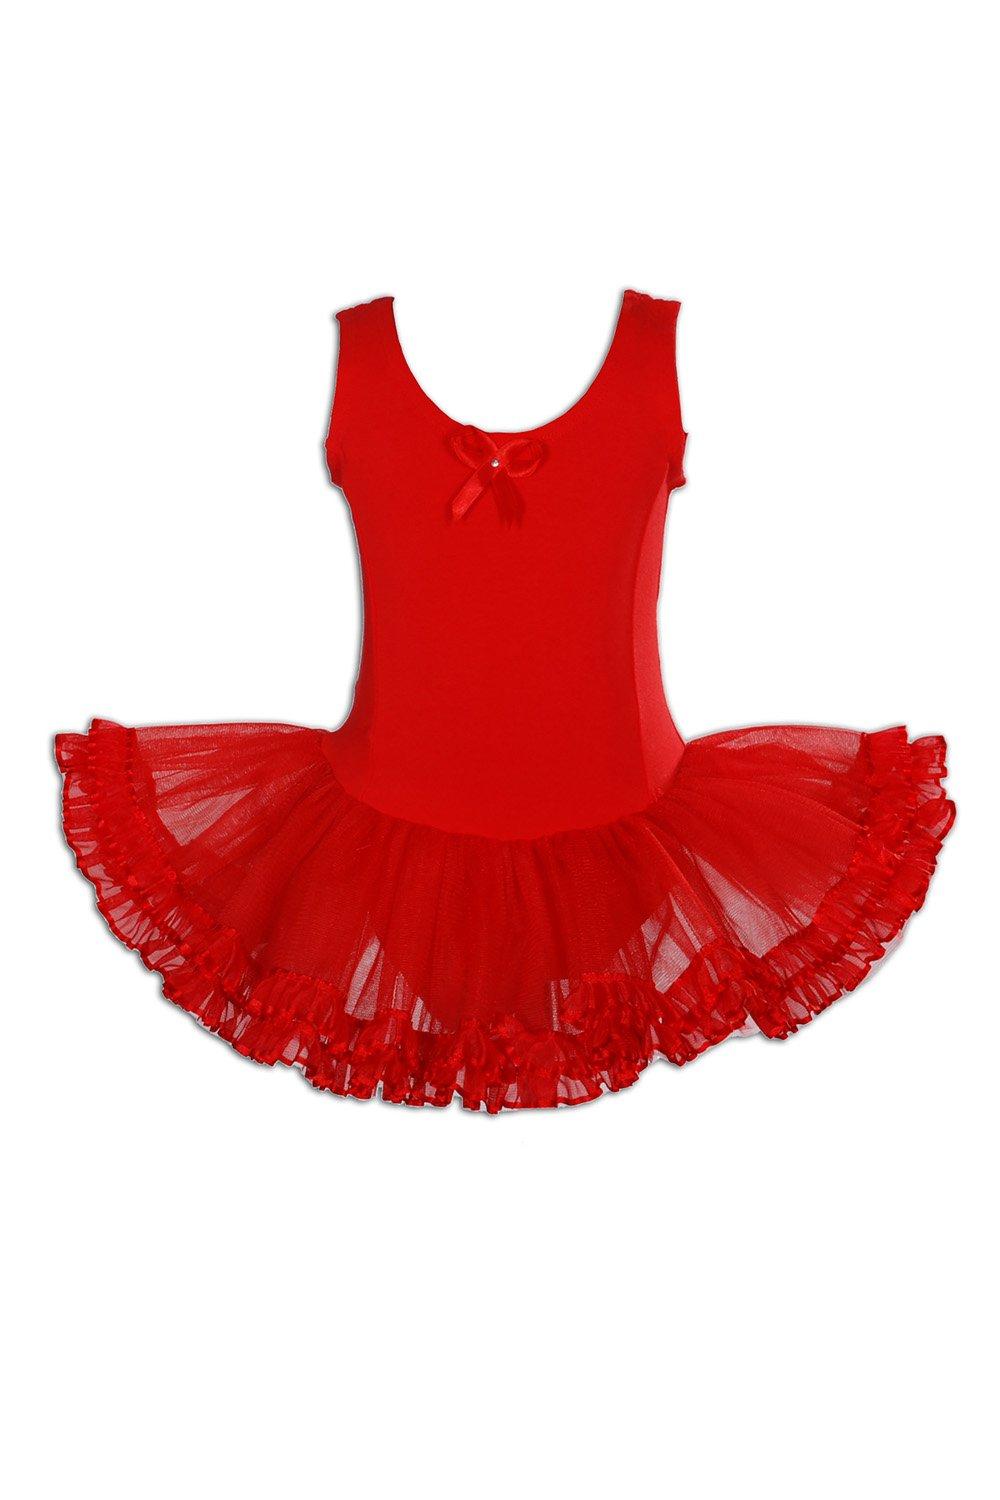 Балетное танцевальное платье-пачка Cinda, красный балетное платье для девочек купальник для танцев кофта сетчатая комбинированная трико танцевальное балетное платье пачка платье принце